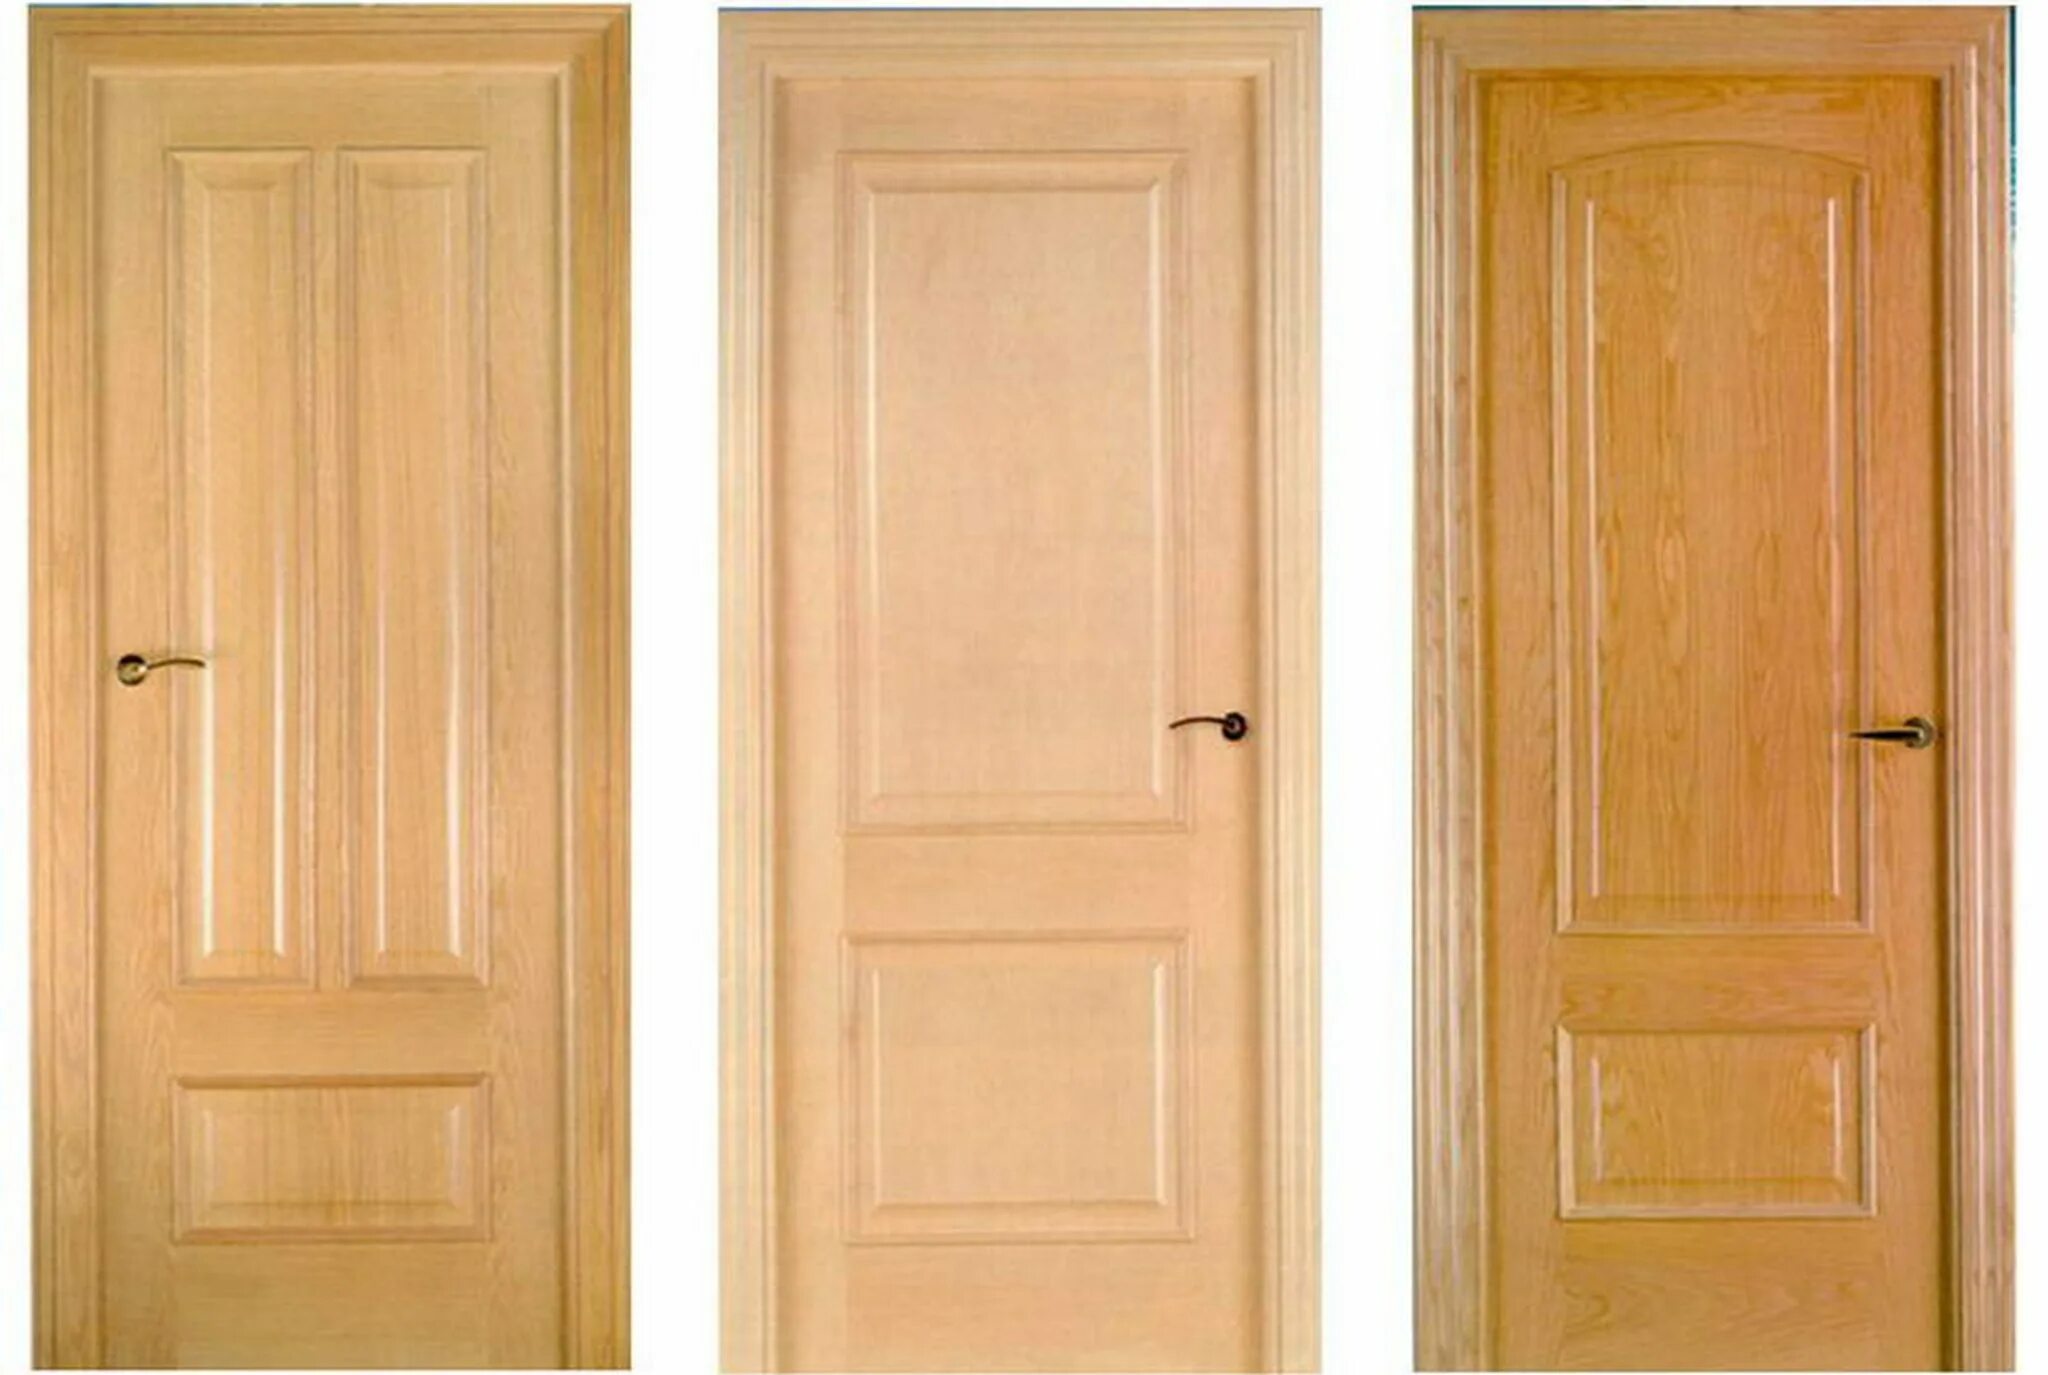 Купить образцы двери. Двери входные деревянные филенчатые. Двери межкомнатные деревянные. Двери межкомнатные филенчатые. Массивная деревянная дверь.